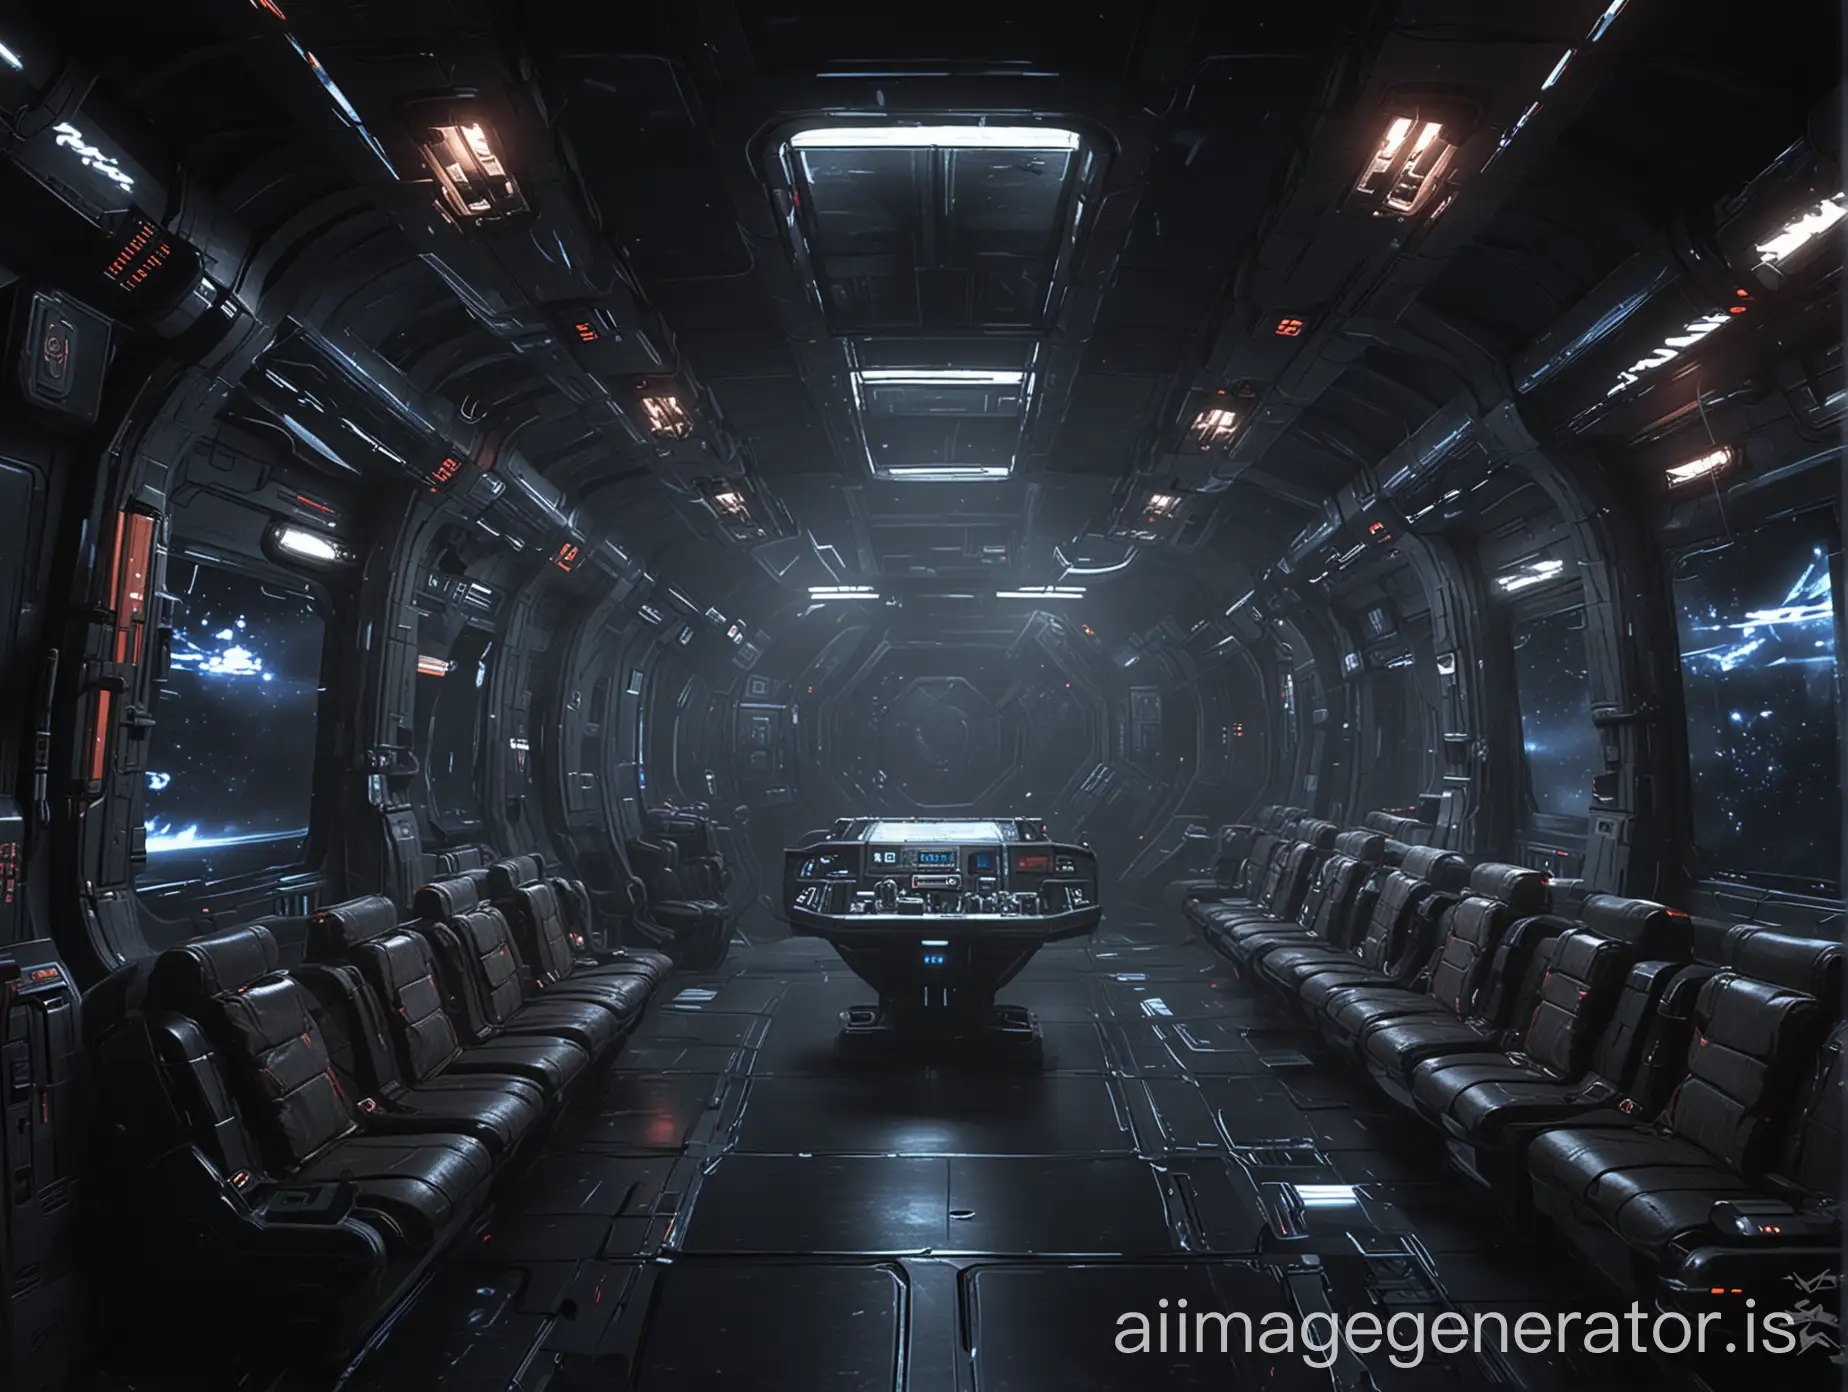 Spaceship interior, ((Dark Matter) & (mass effect) style).